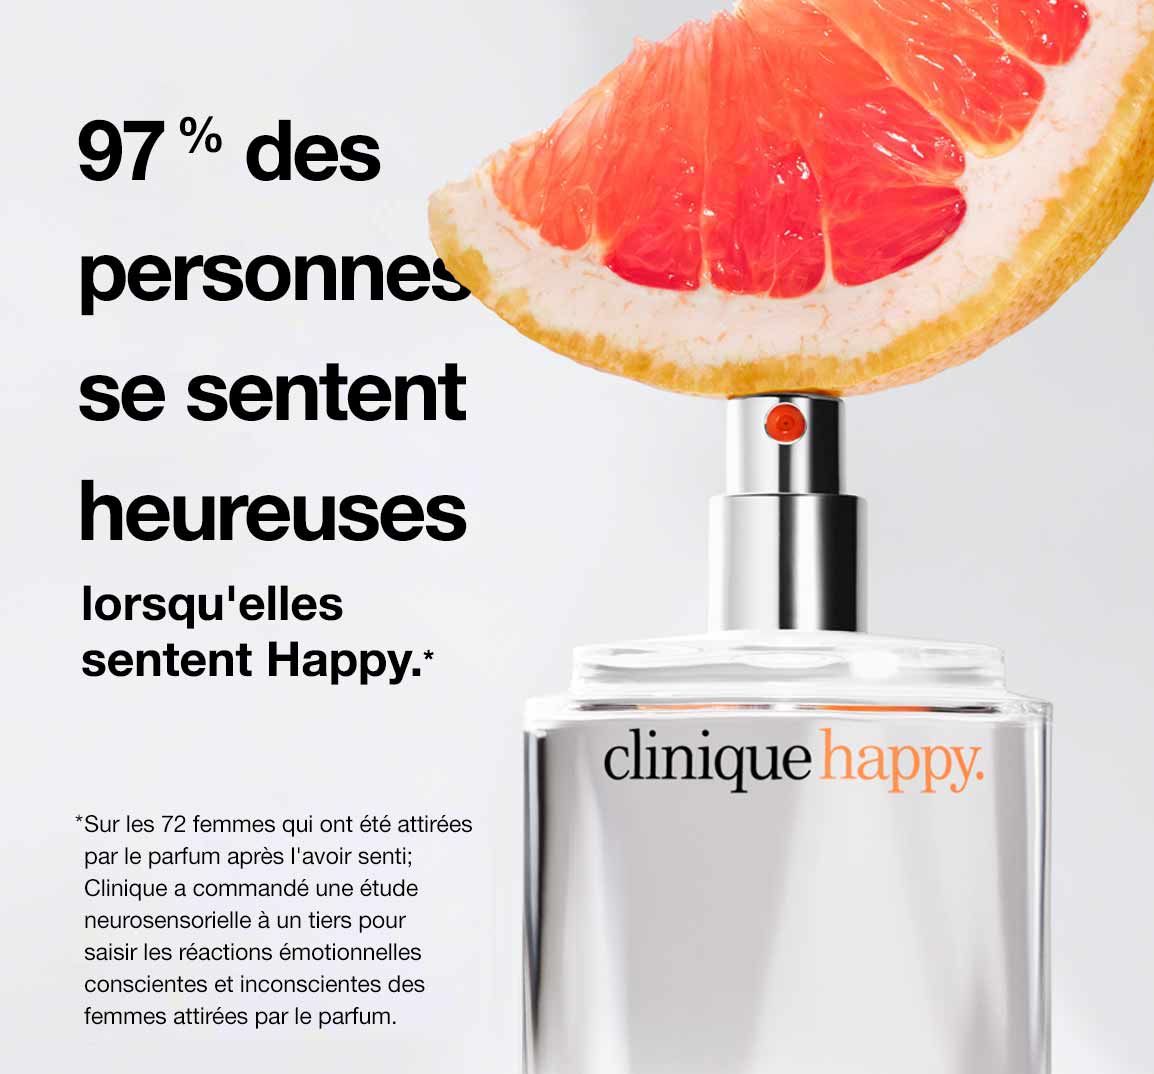 97 % des personnes se sentent heureuses lorsqu'elles sentent Happy.*